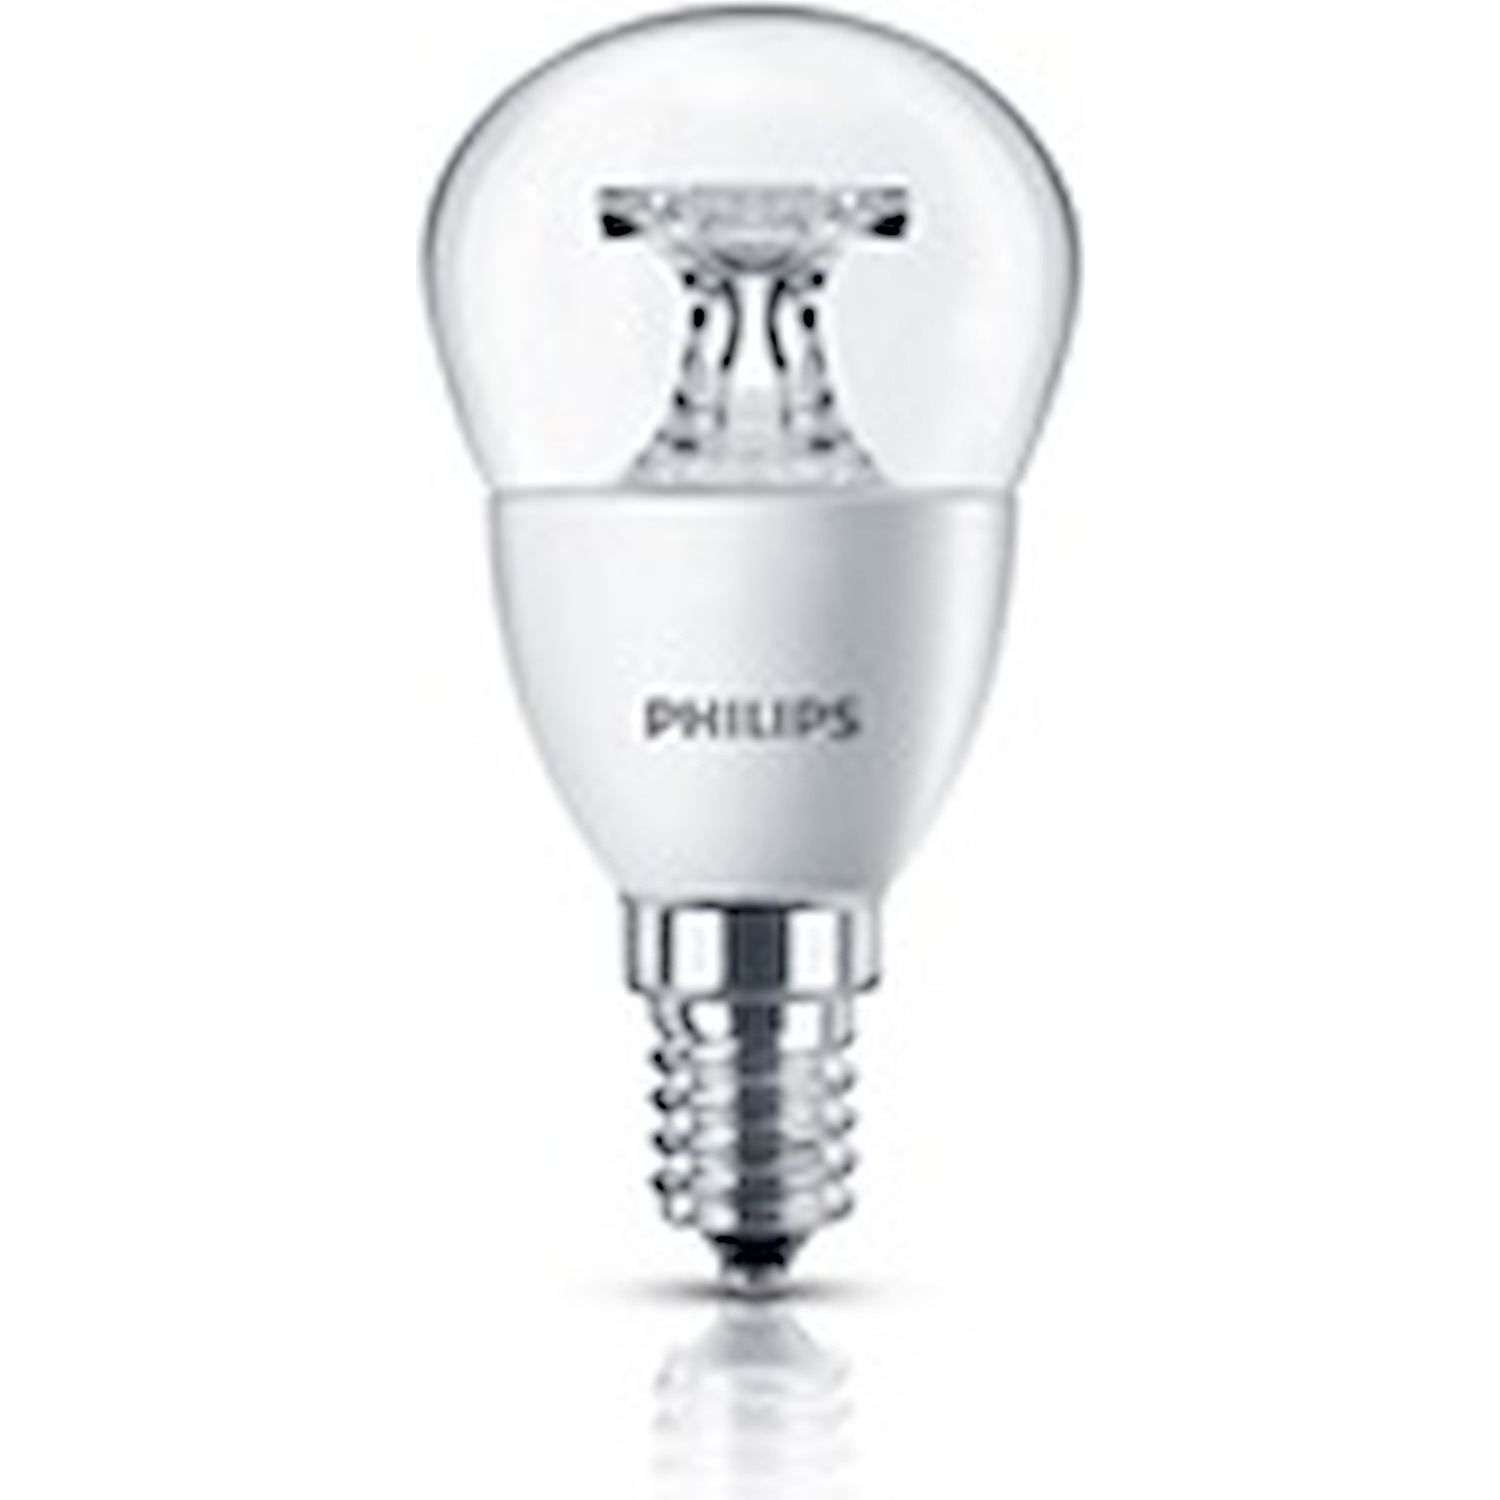 Immagine per Lampadina Philips LED Sfera chiara E14 25W da DIMOStore